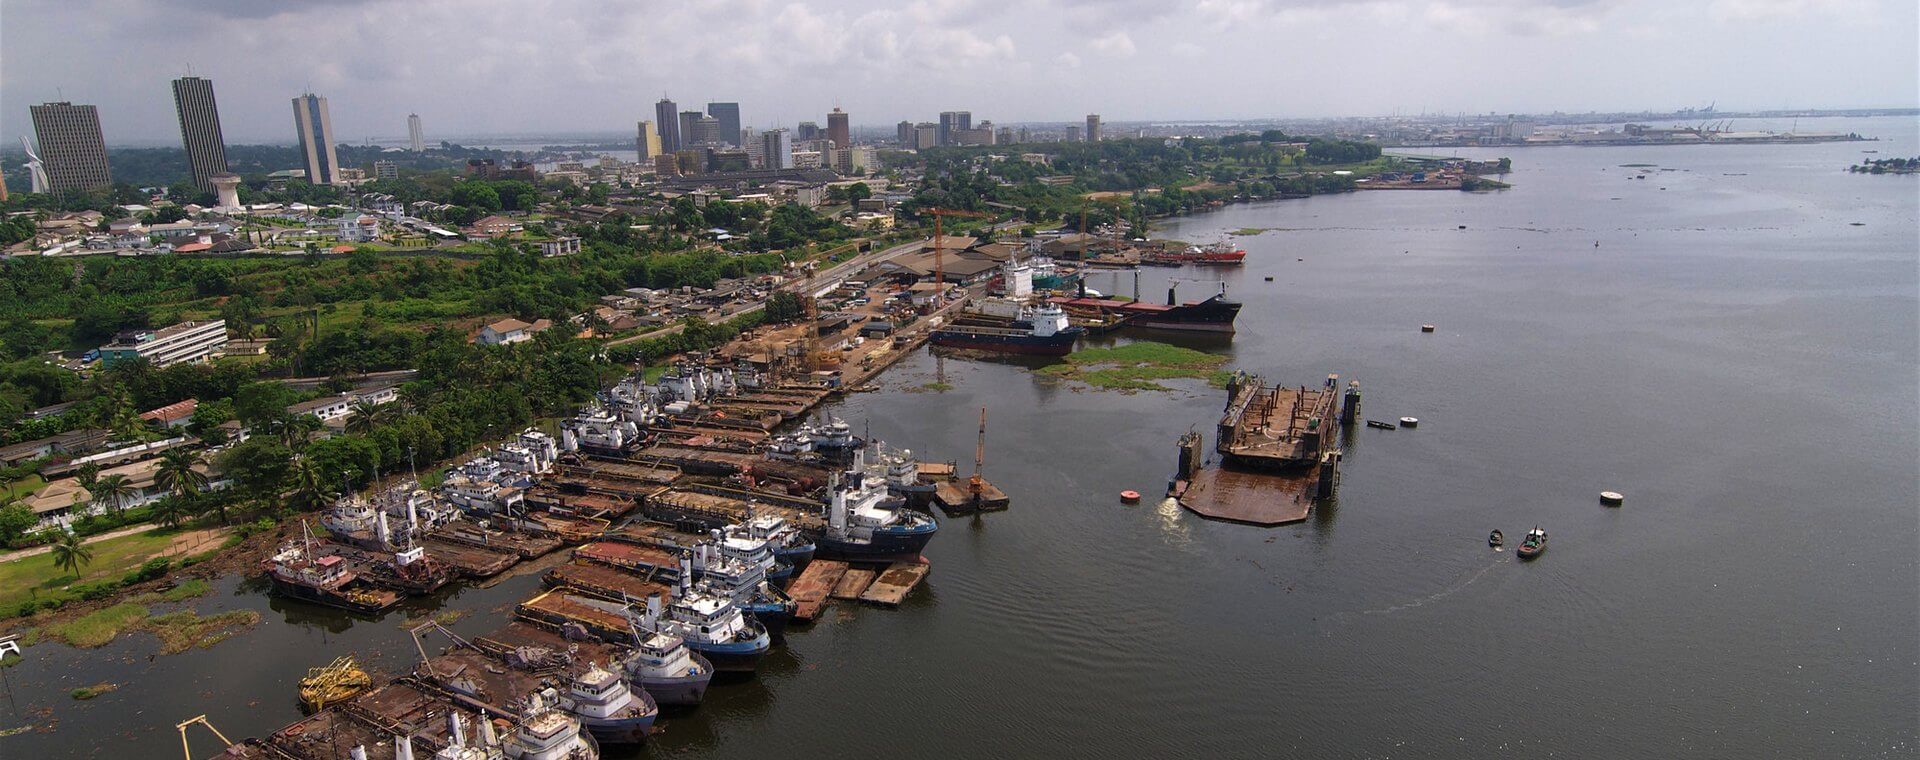 Кот-д'ивуар: достопримечательности и популярные места